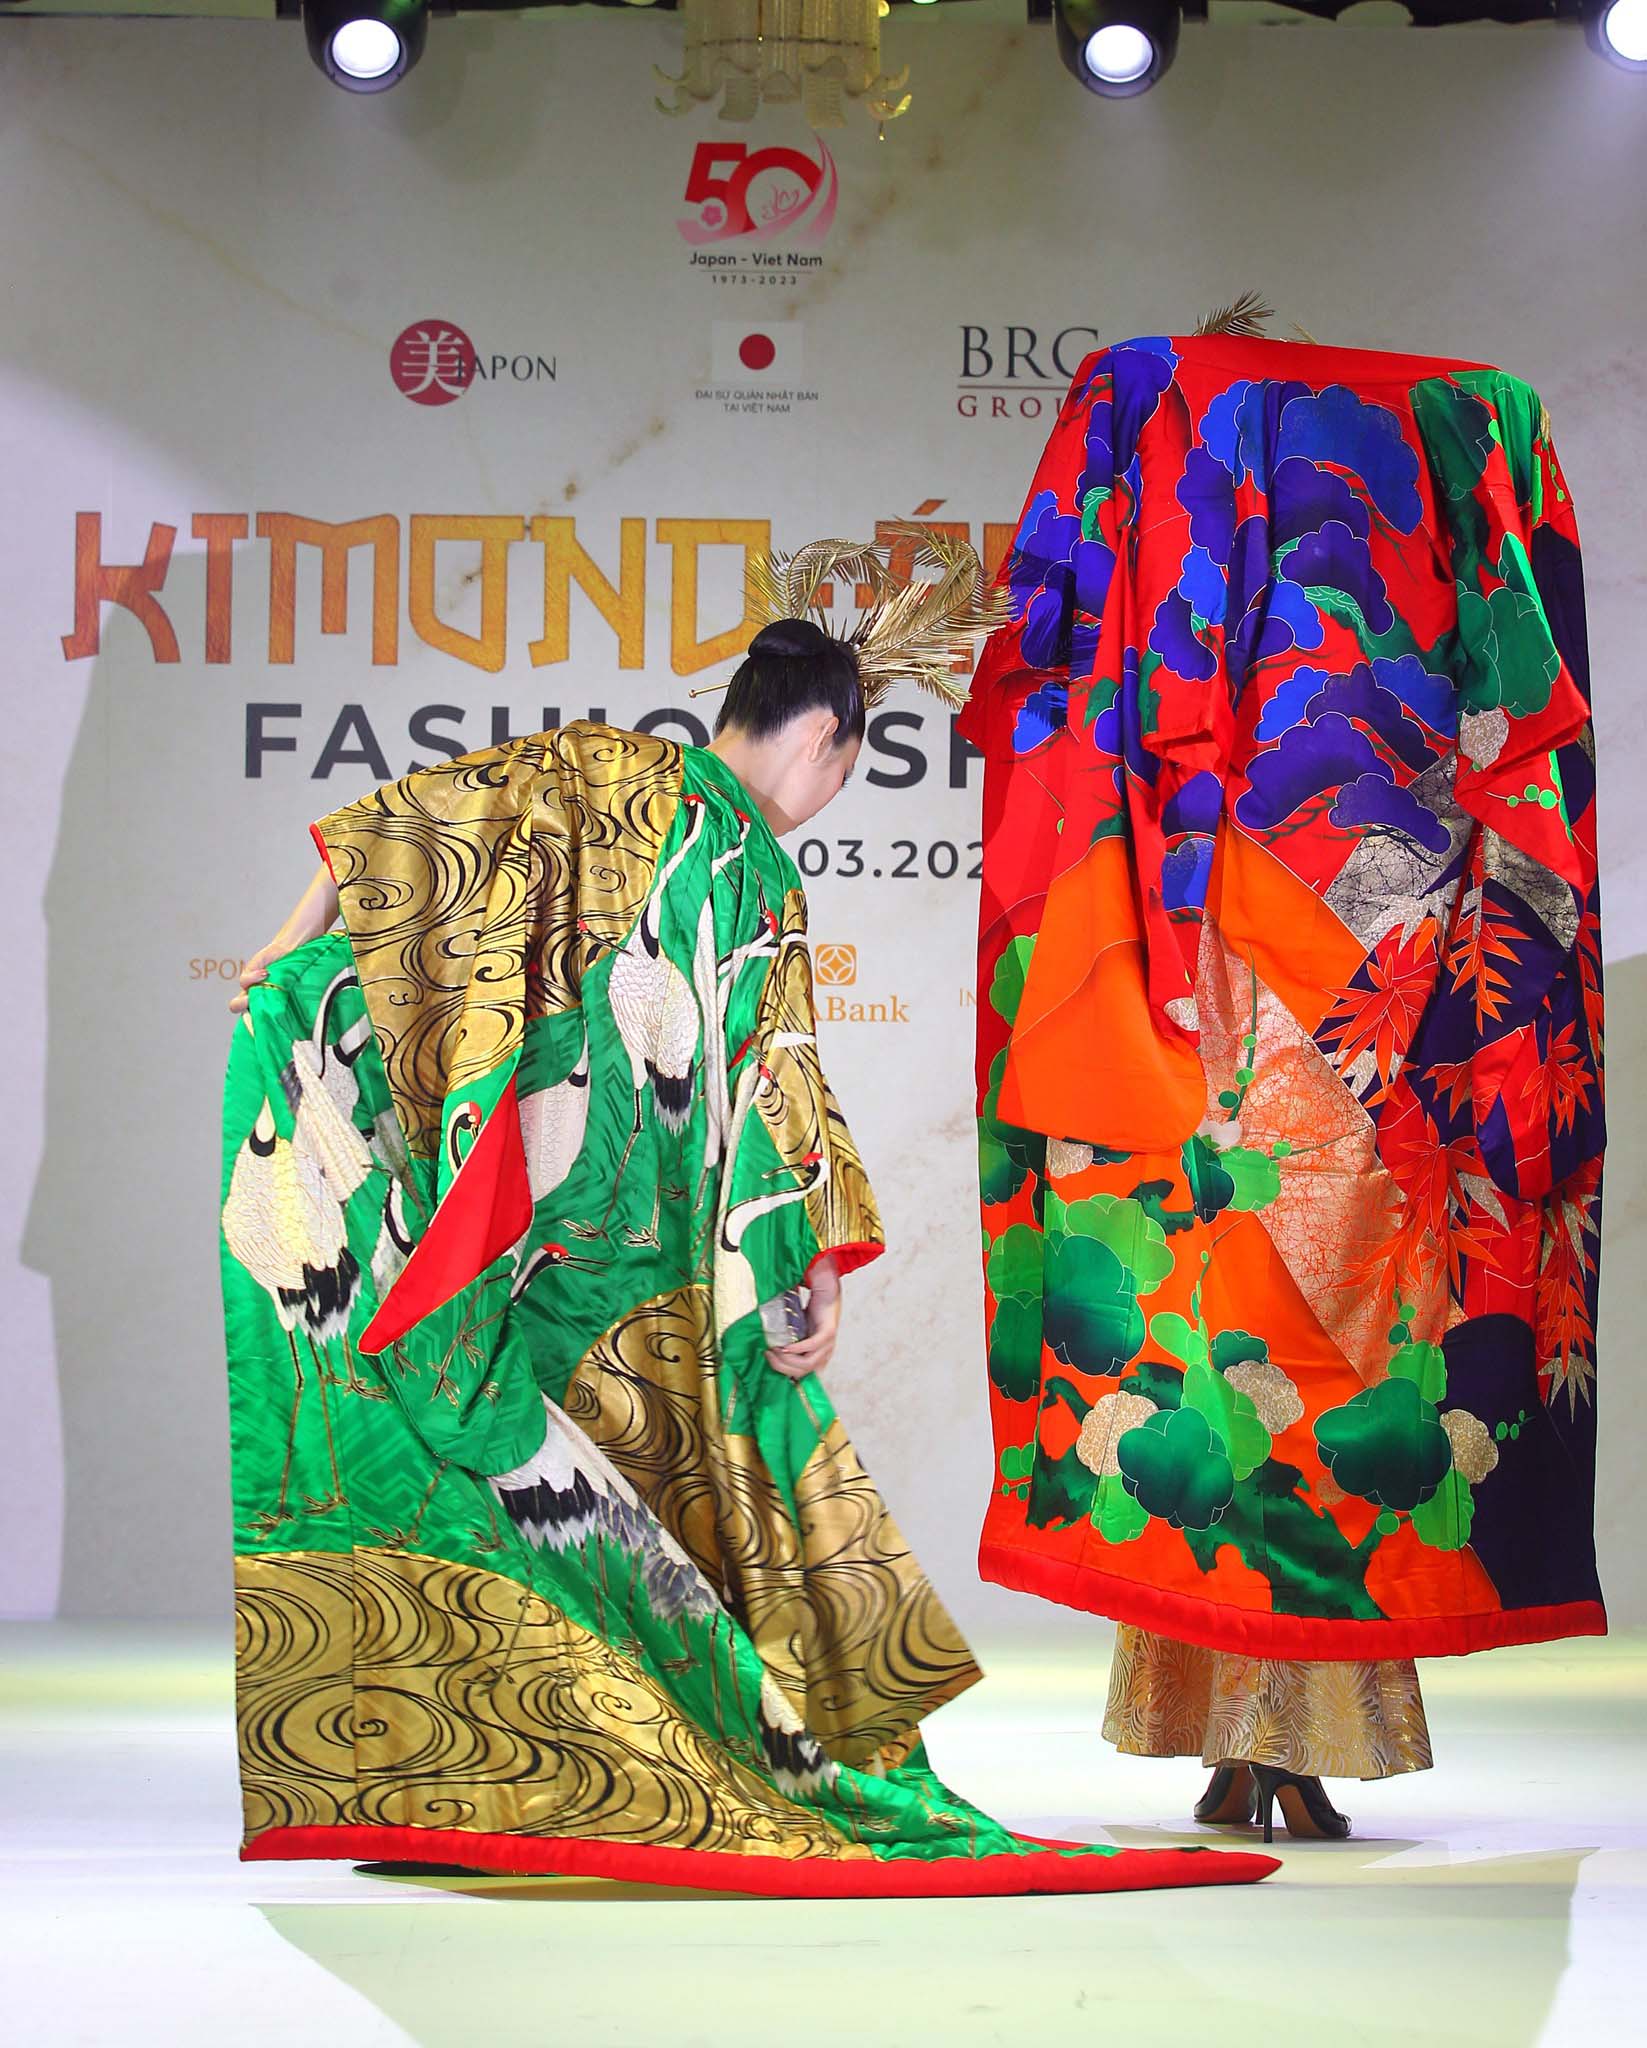 Giới mộ điệu thời trang không ngớt lời cảm thán khi được chiêm ngưỡng những bộ sưu tập kimono truyền thống và cách tân tuyệt đẹp cùng những bộ áo dài được may từ các chất liệu của kimono xưa của nhà thiết kế thời trang tài ba Kobayashi Eiko, cũng là nhà sáng lập tổ chức phi lợi nhuận Be - Japon.